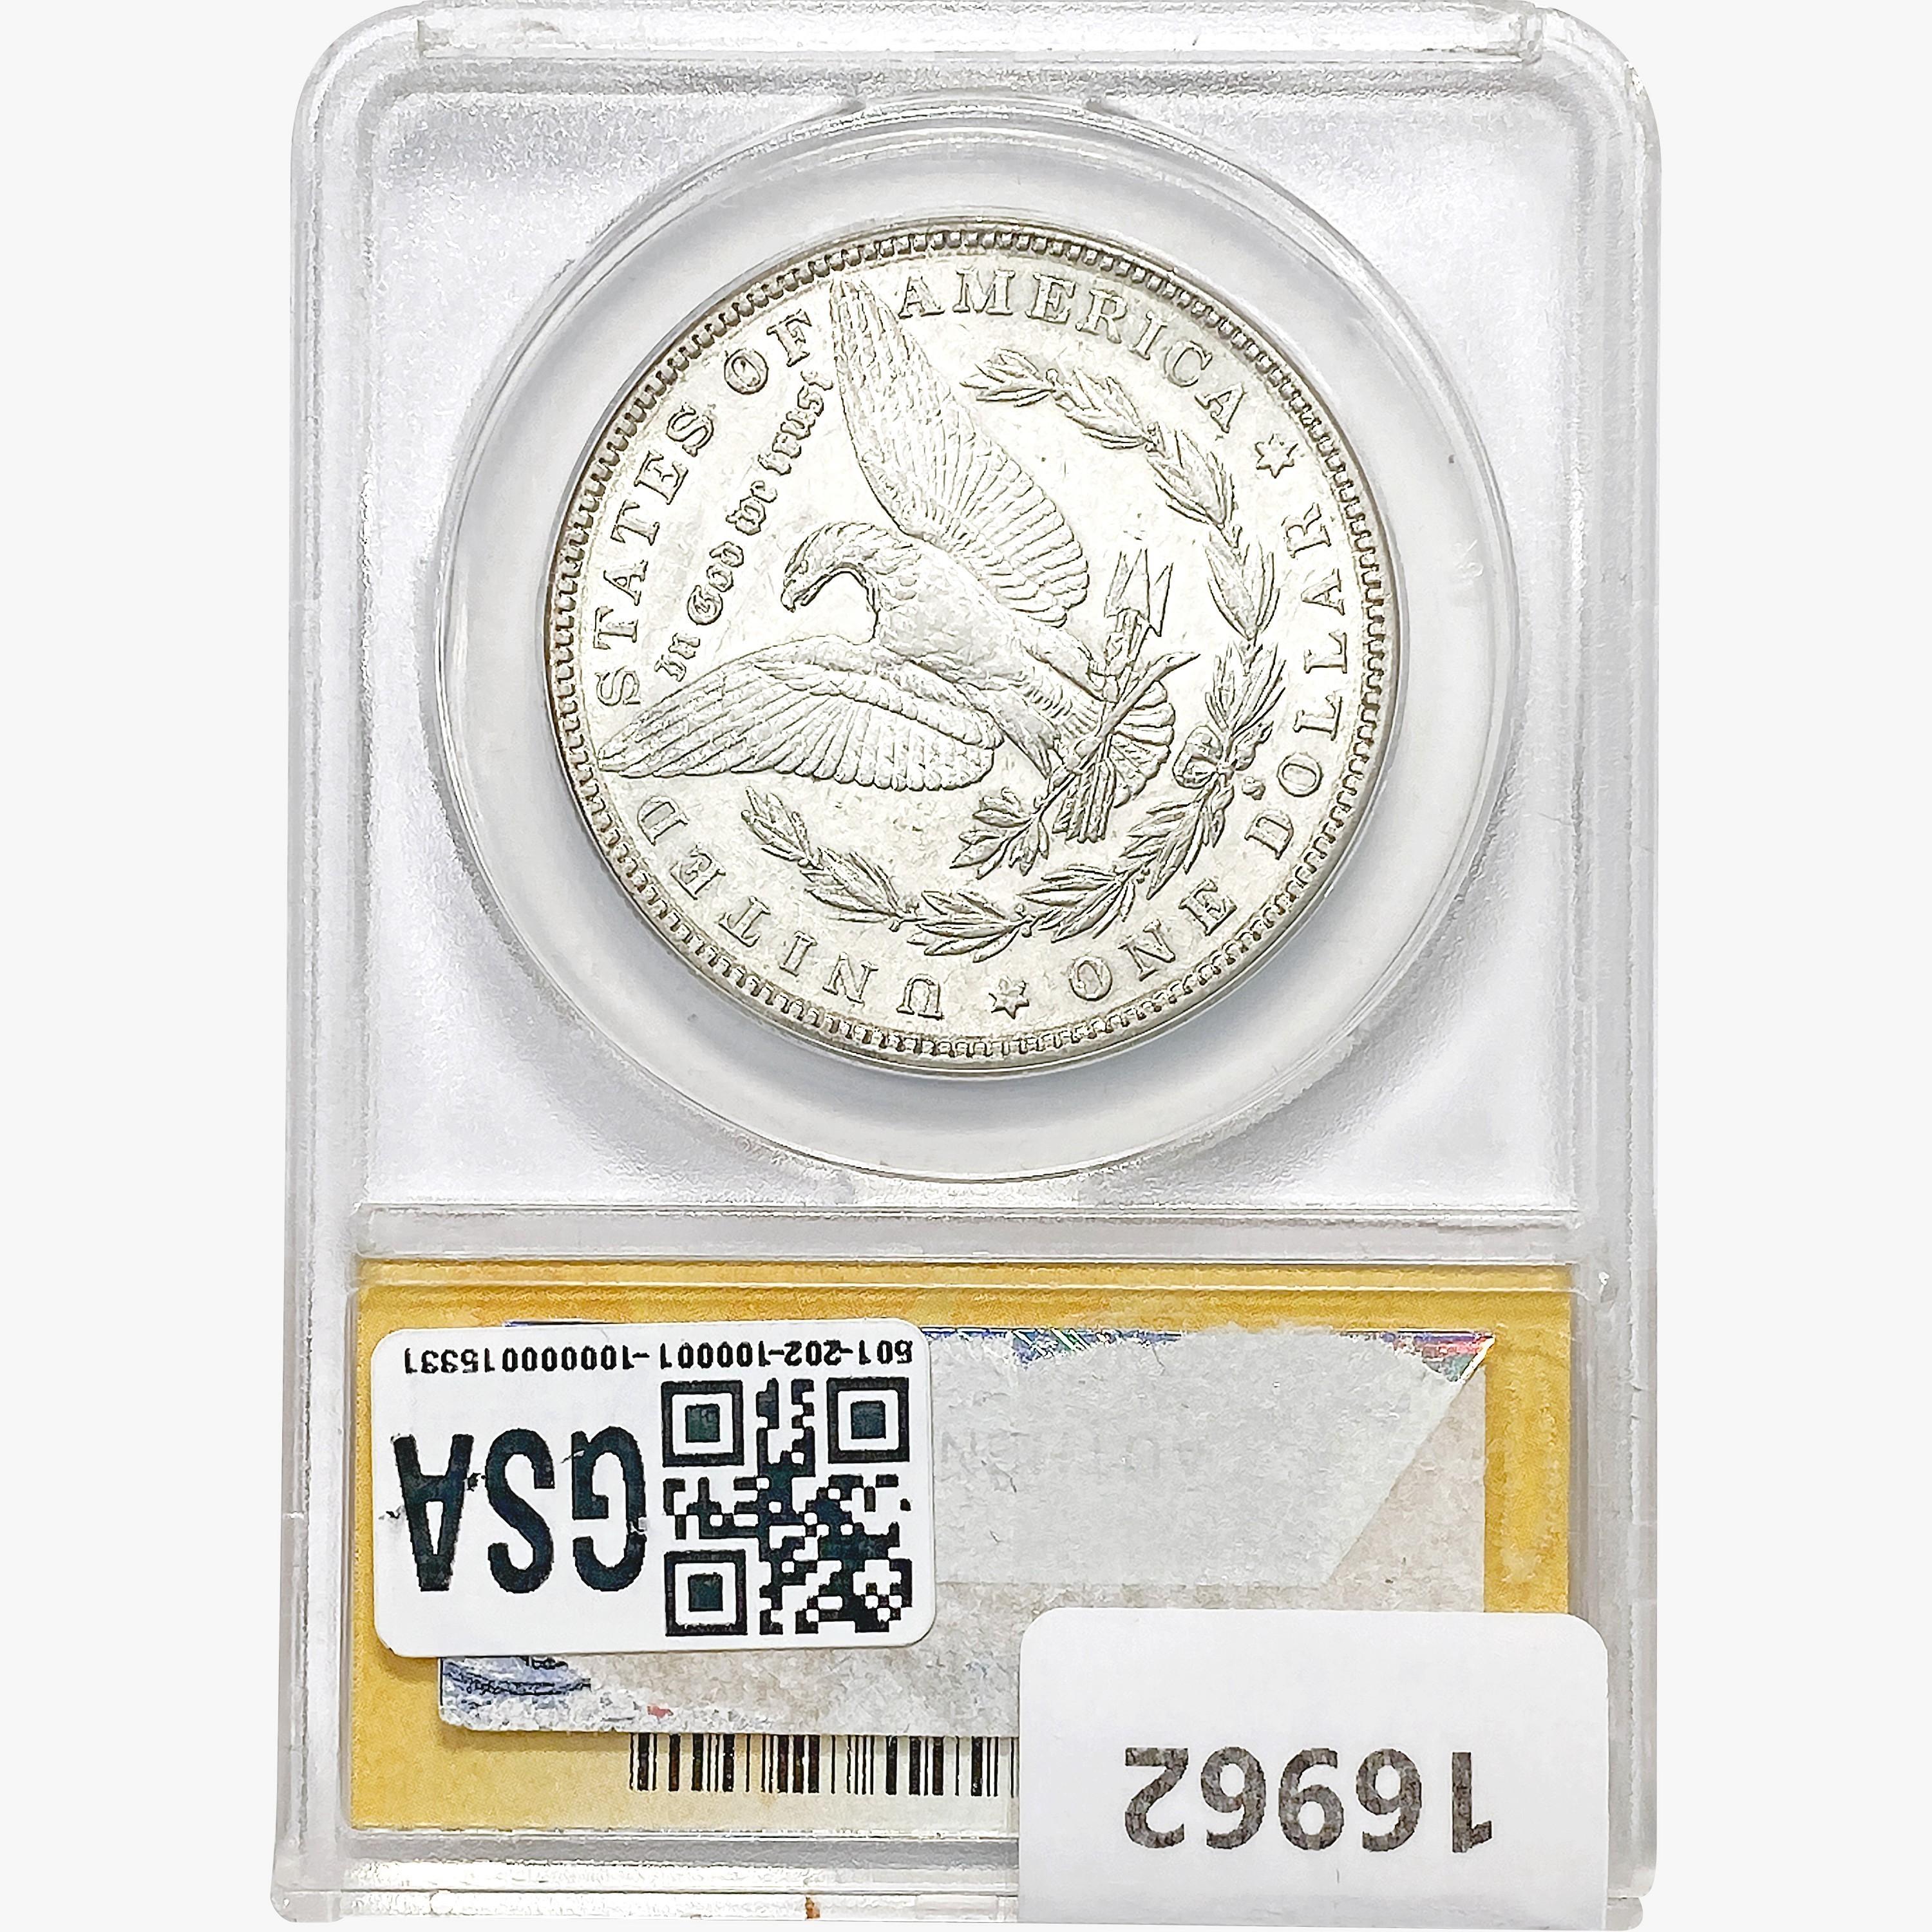 1883-S Morgan Silver Dollar ANACS AU50